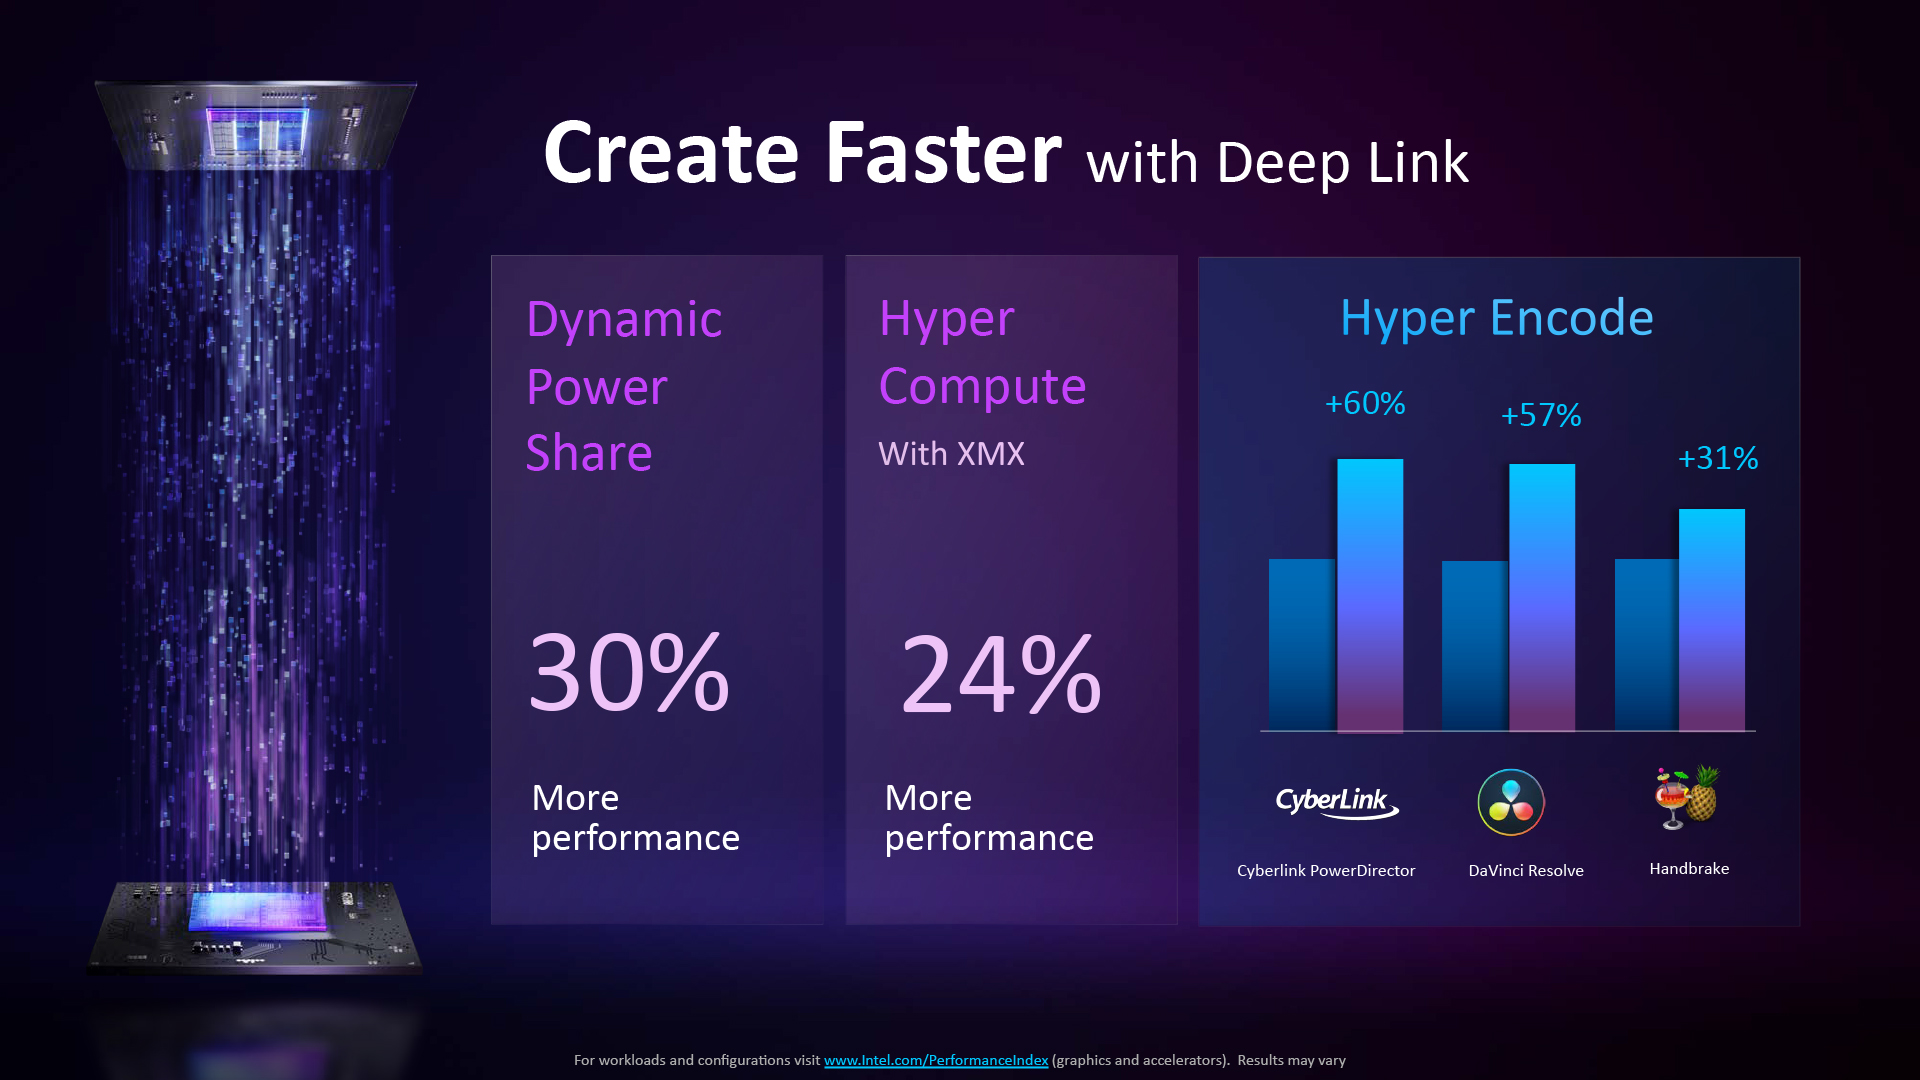 Intel Deep Link